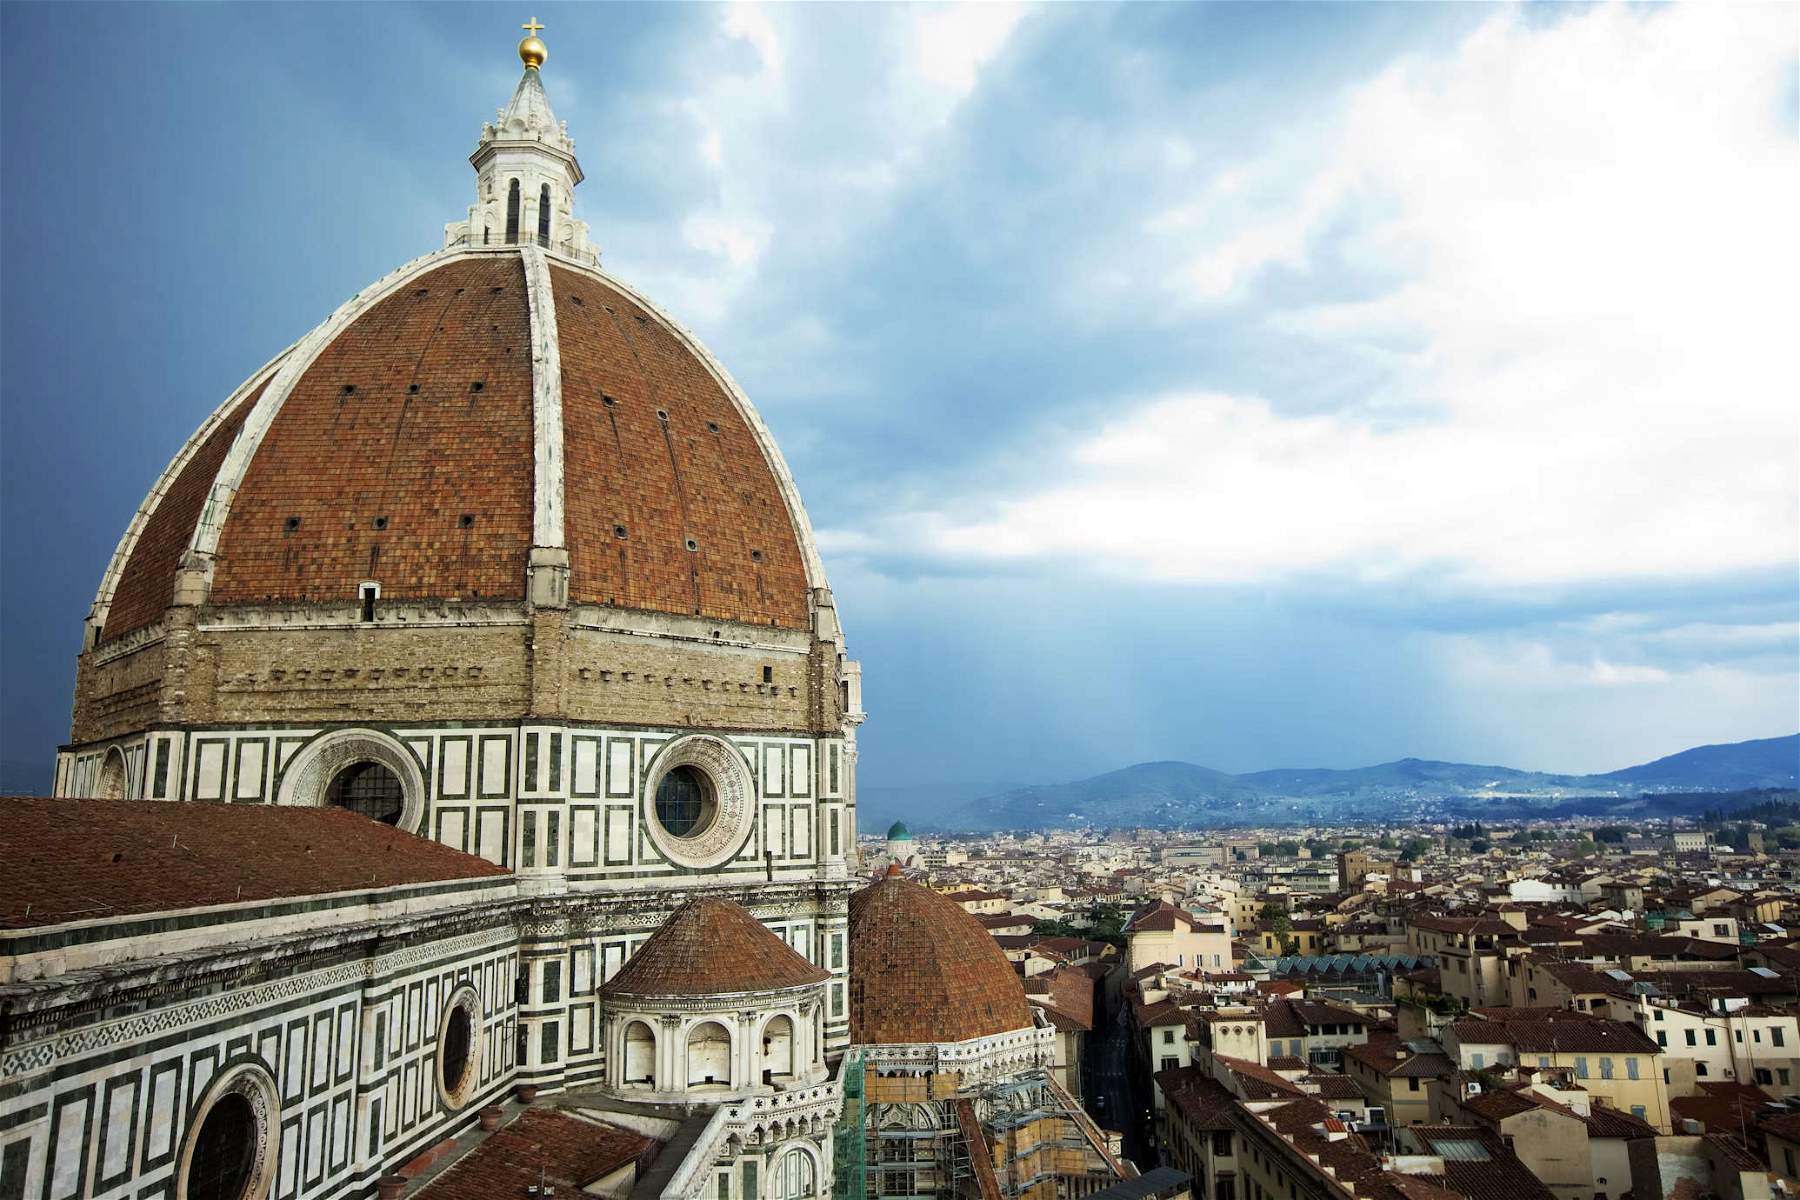 Visitantes sucios: un turista defeca en las escaleras de la cúpula de Brunelleschi